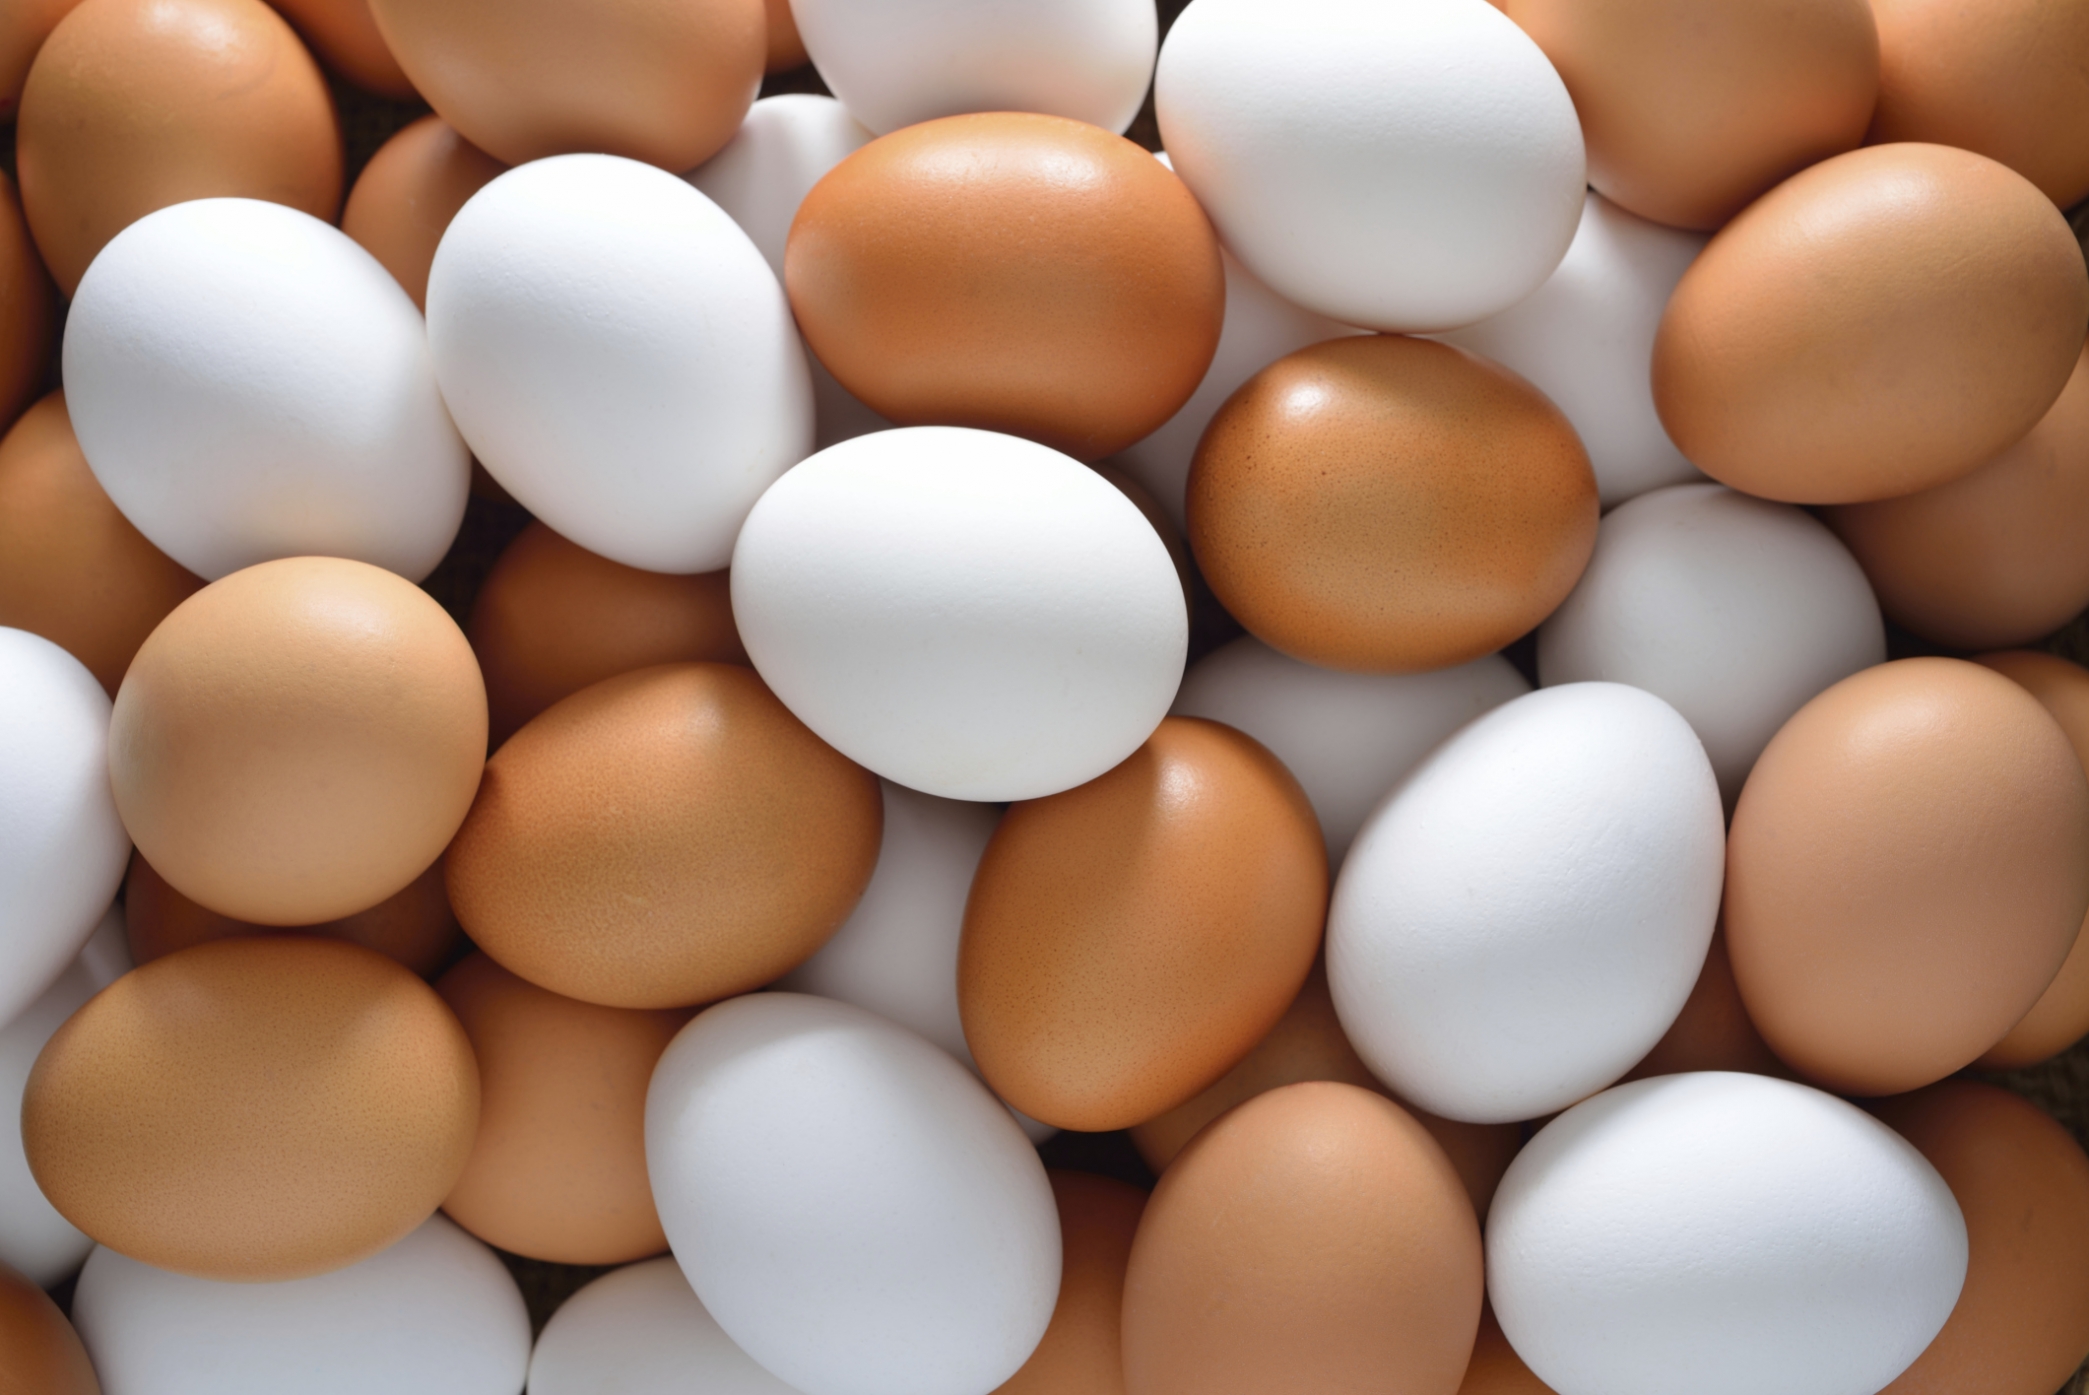 استيراد كميات إضافية من البيض خلال أيام